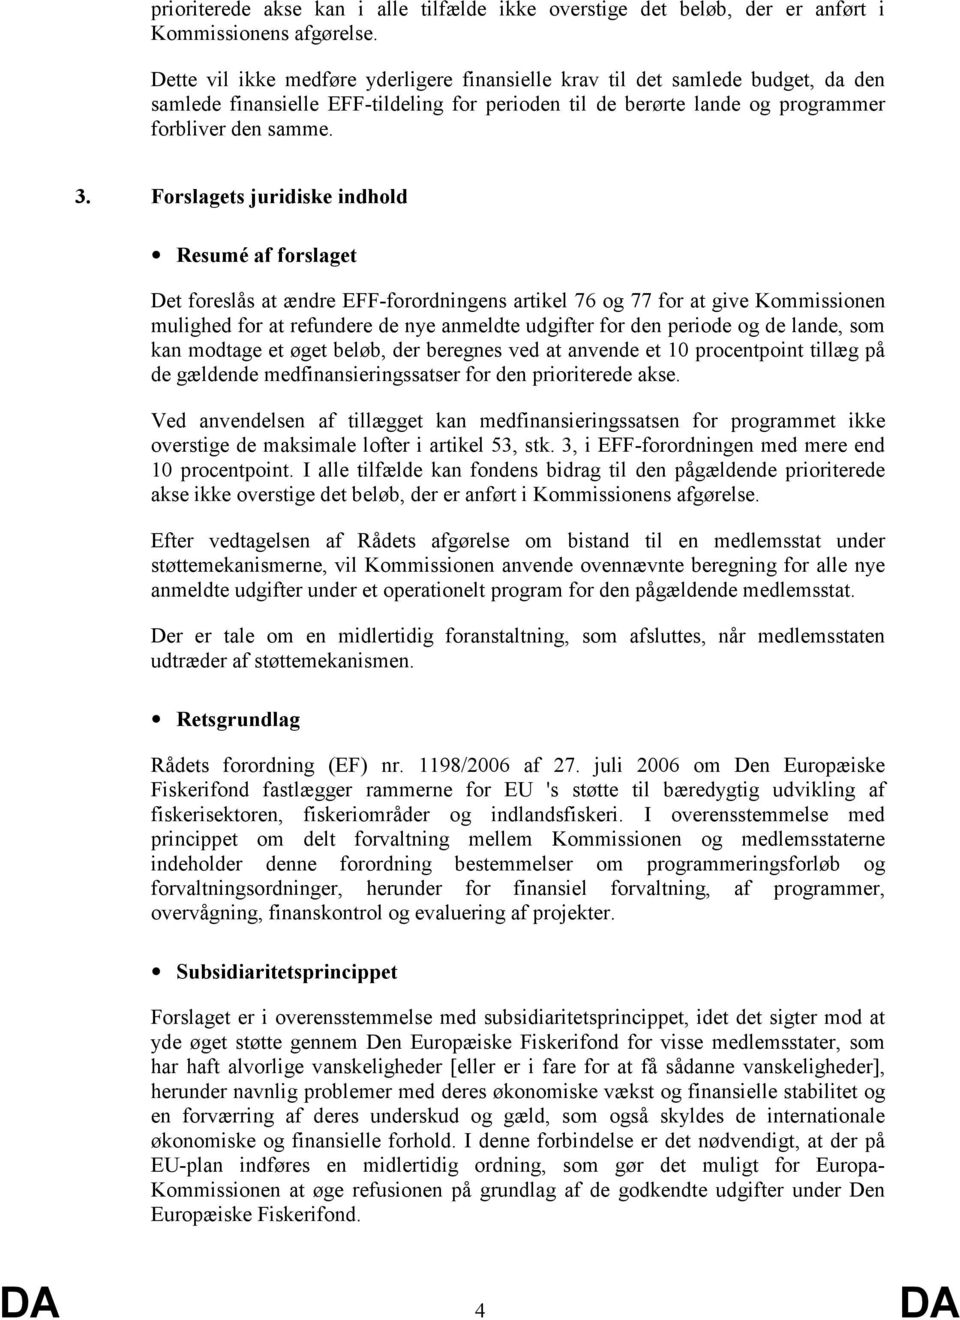 Forslagets juridiske indhold Resumé af forslaget Det foreslås at ændre EFF-forordningens artikel 76 og 77 for at give Kommissionen mulighed for at refundere de nye anmeldte udgifter for den periode